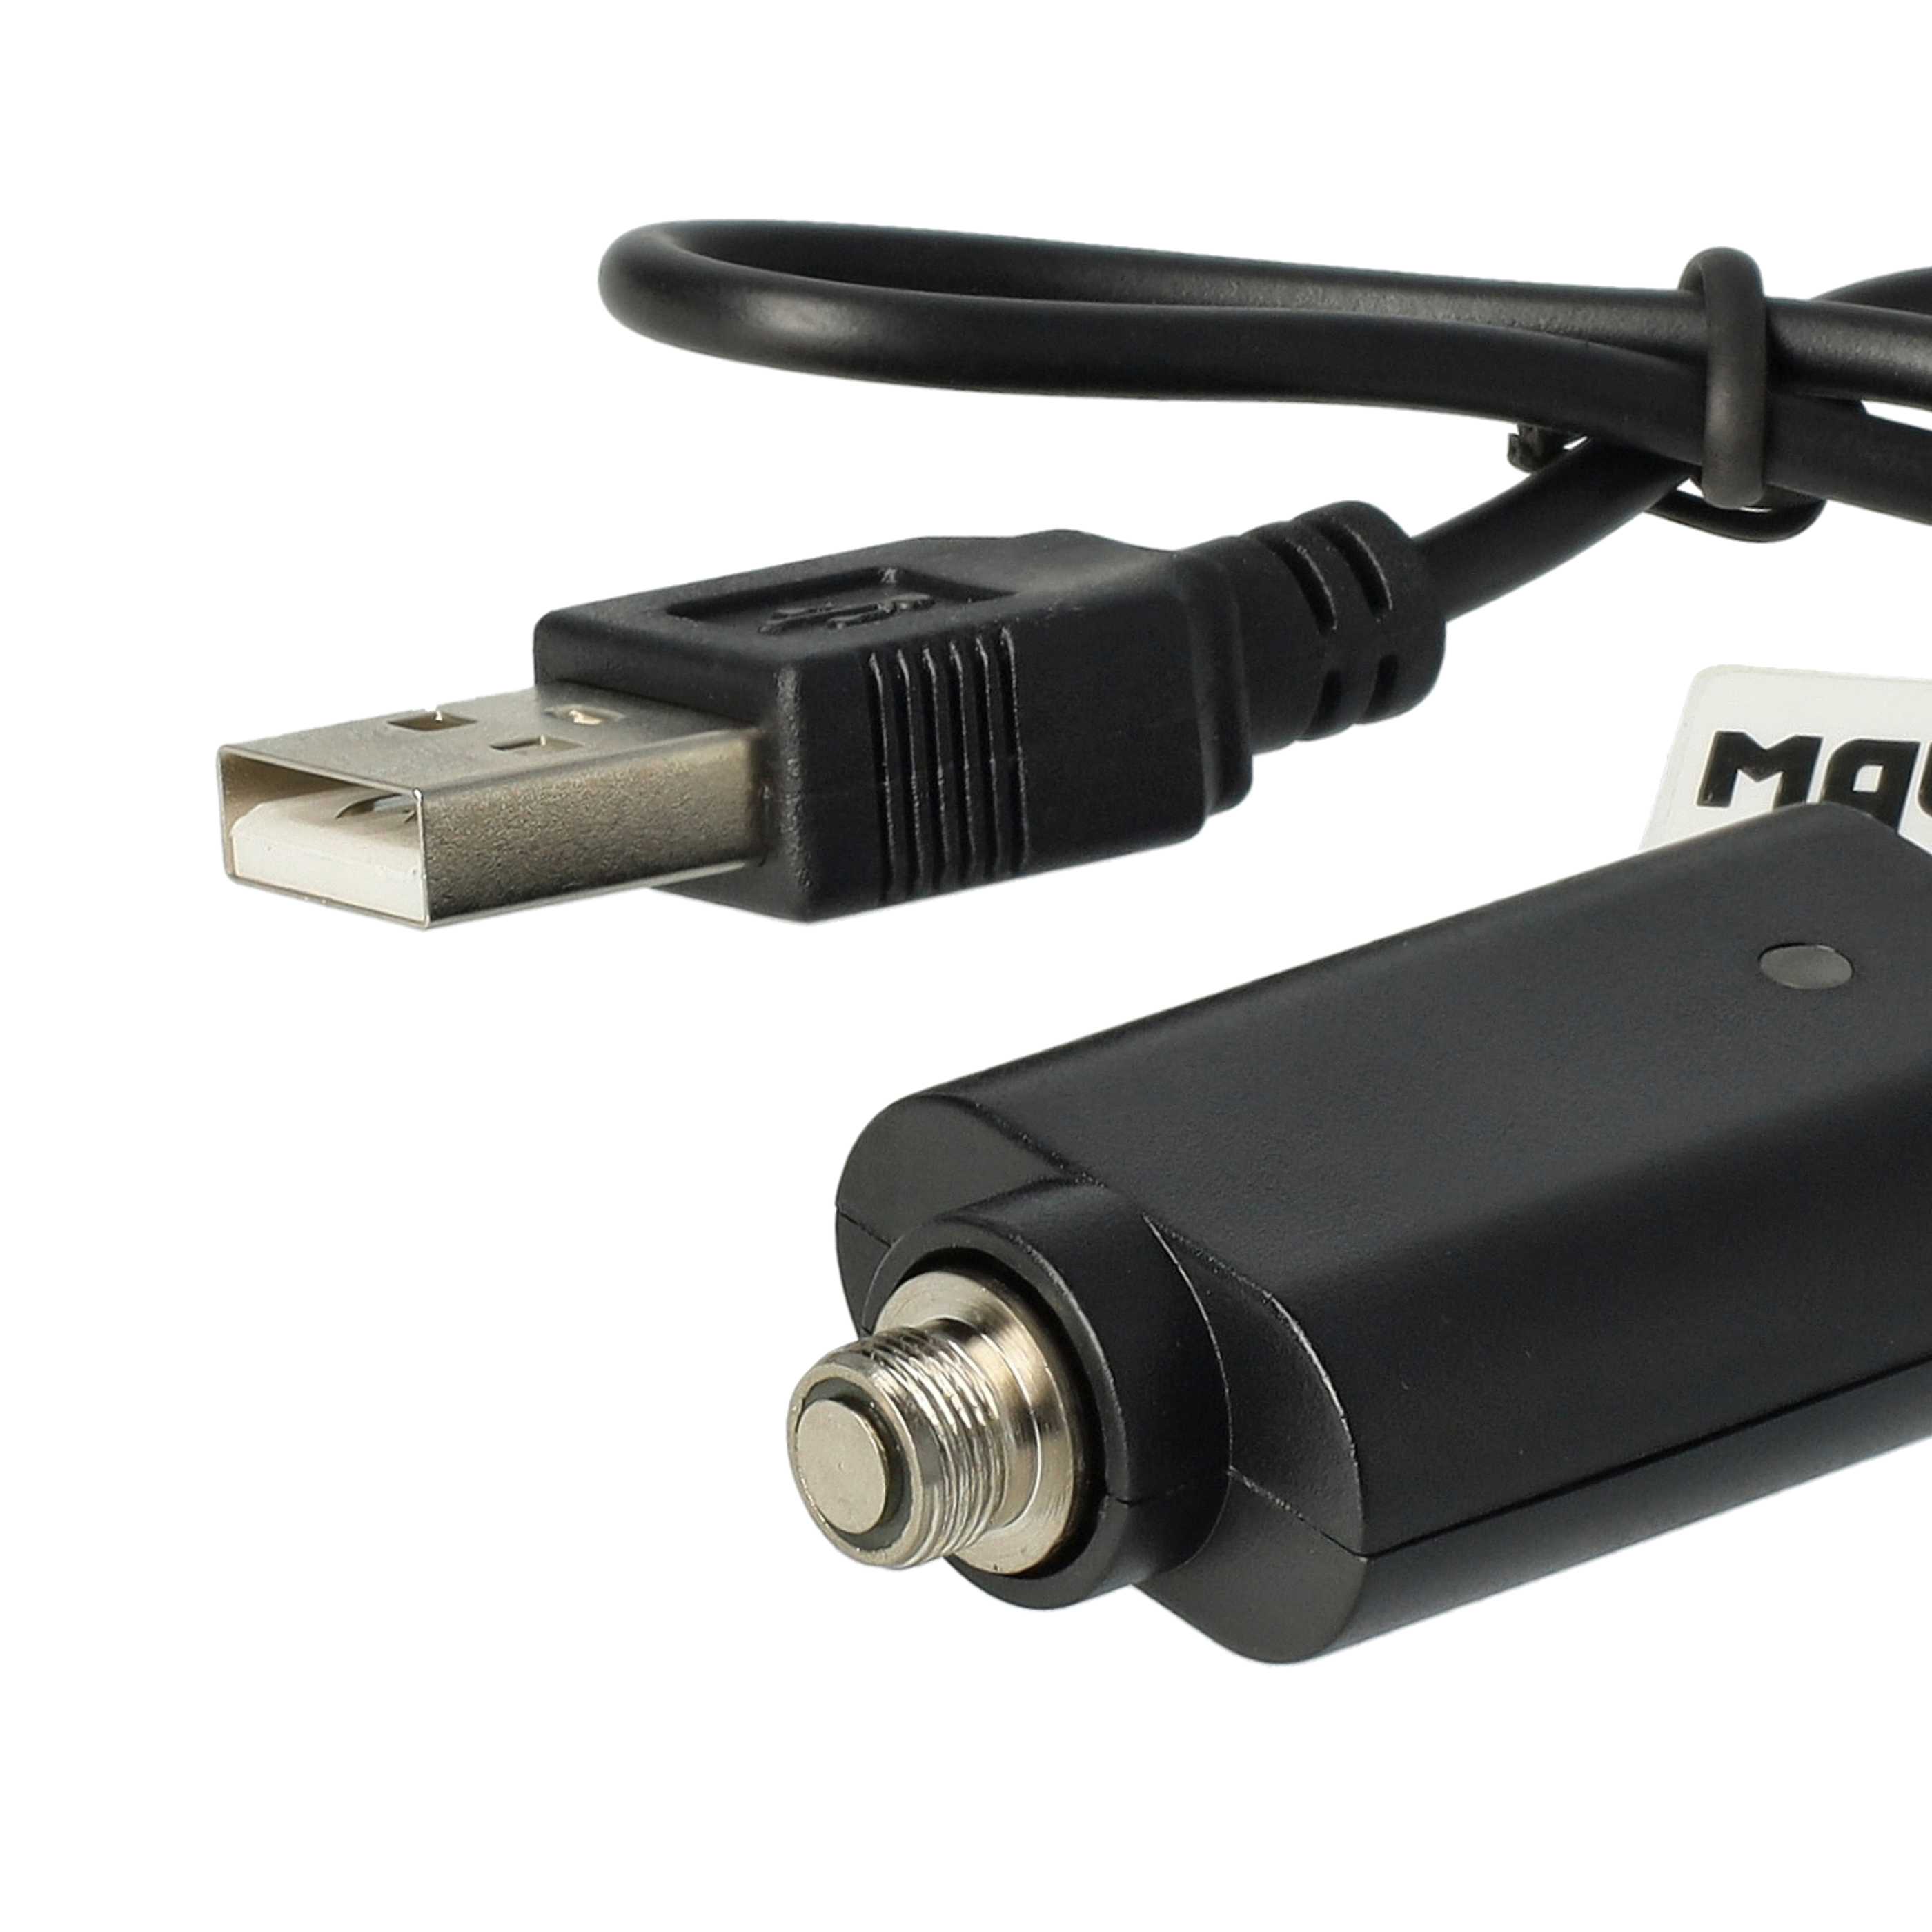 vhbw Cargador USB compatible con diversos cigarrillo electrónico, shisha con tapa de rosca